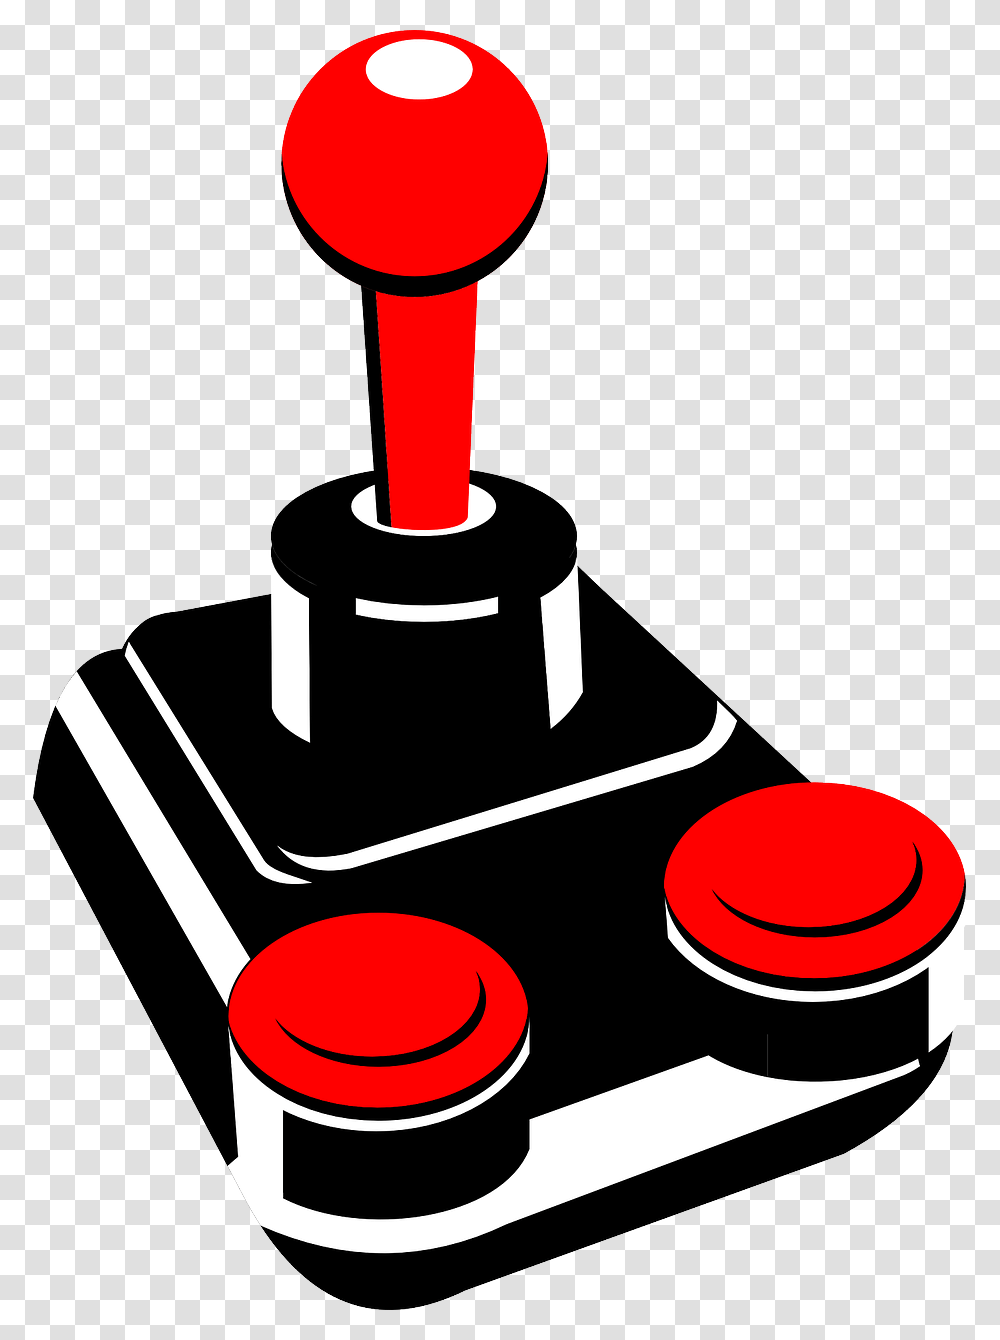 Joystick Classic Atari Game Controller Control Joystick Vector, Electronics, Shovel Transparent Png